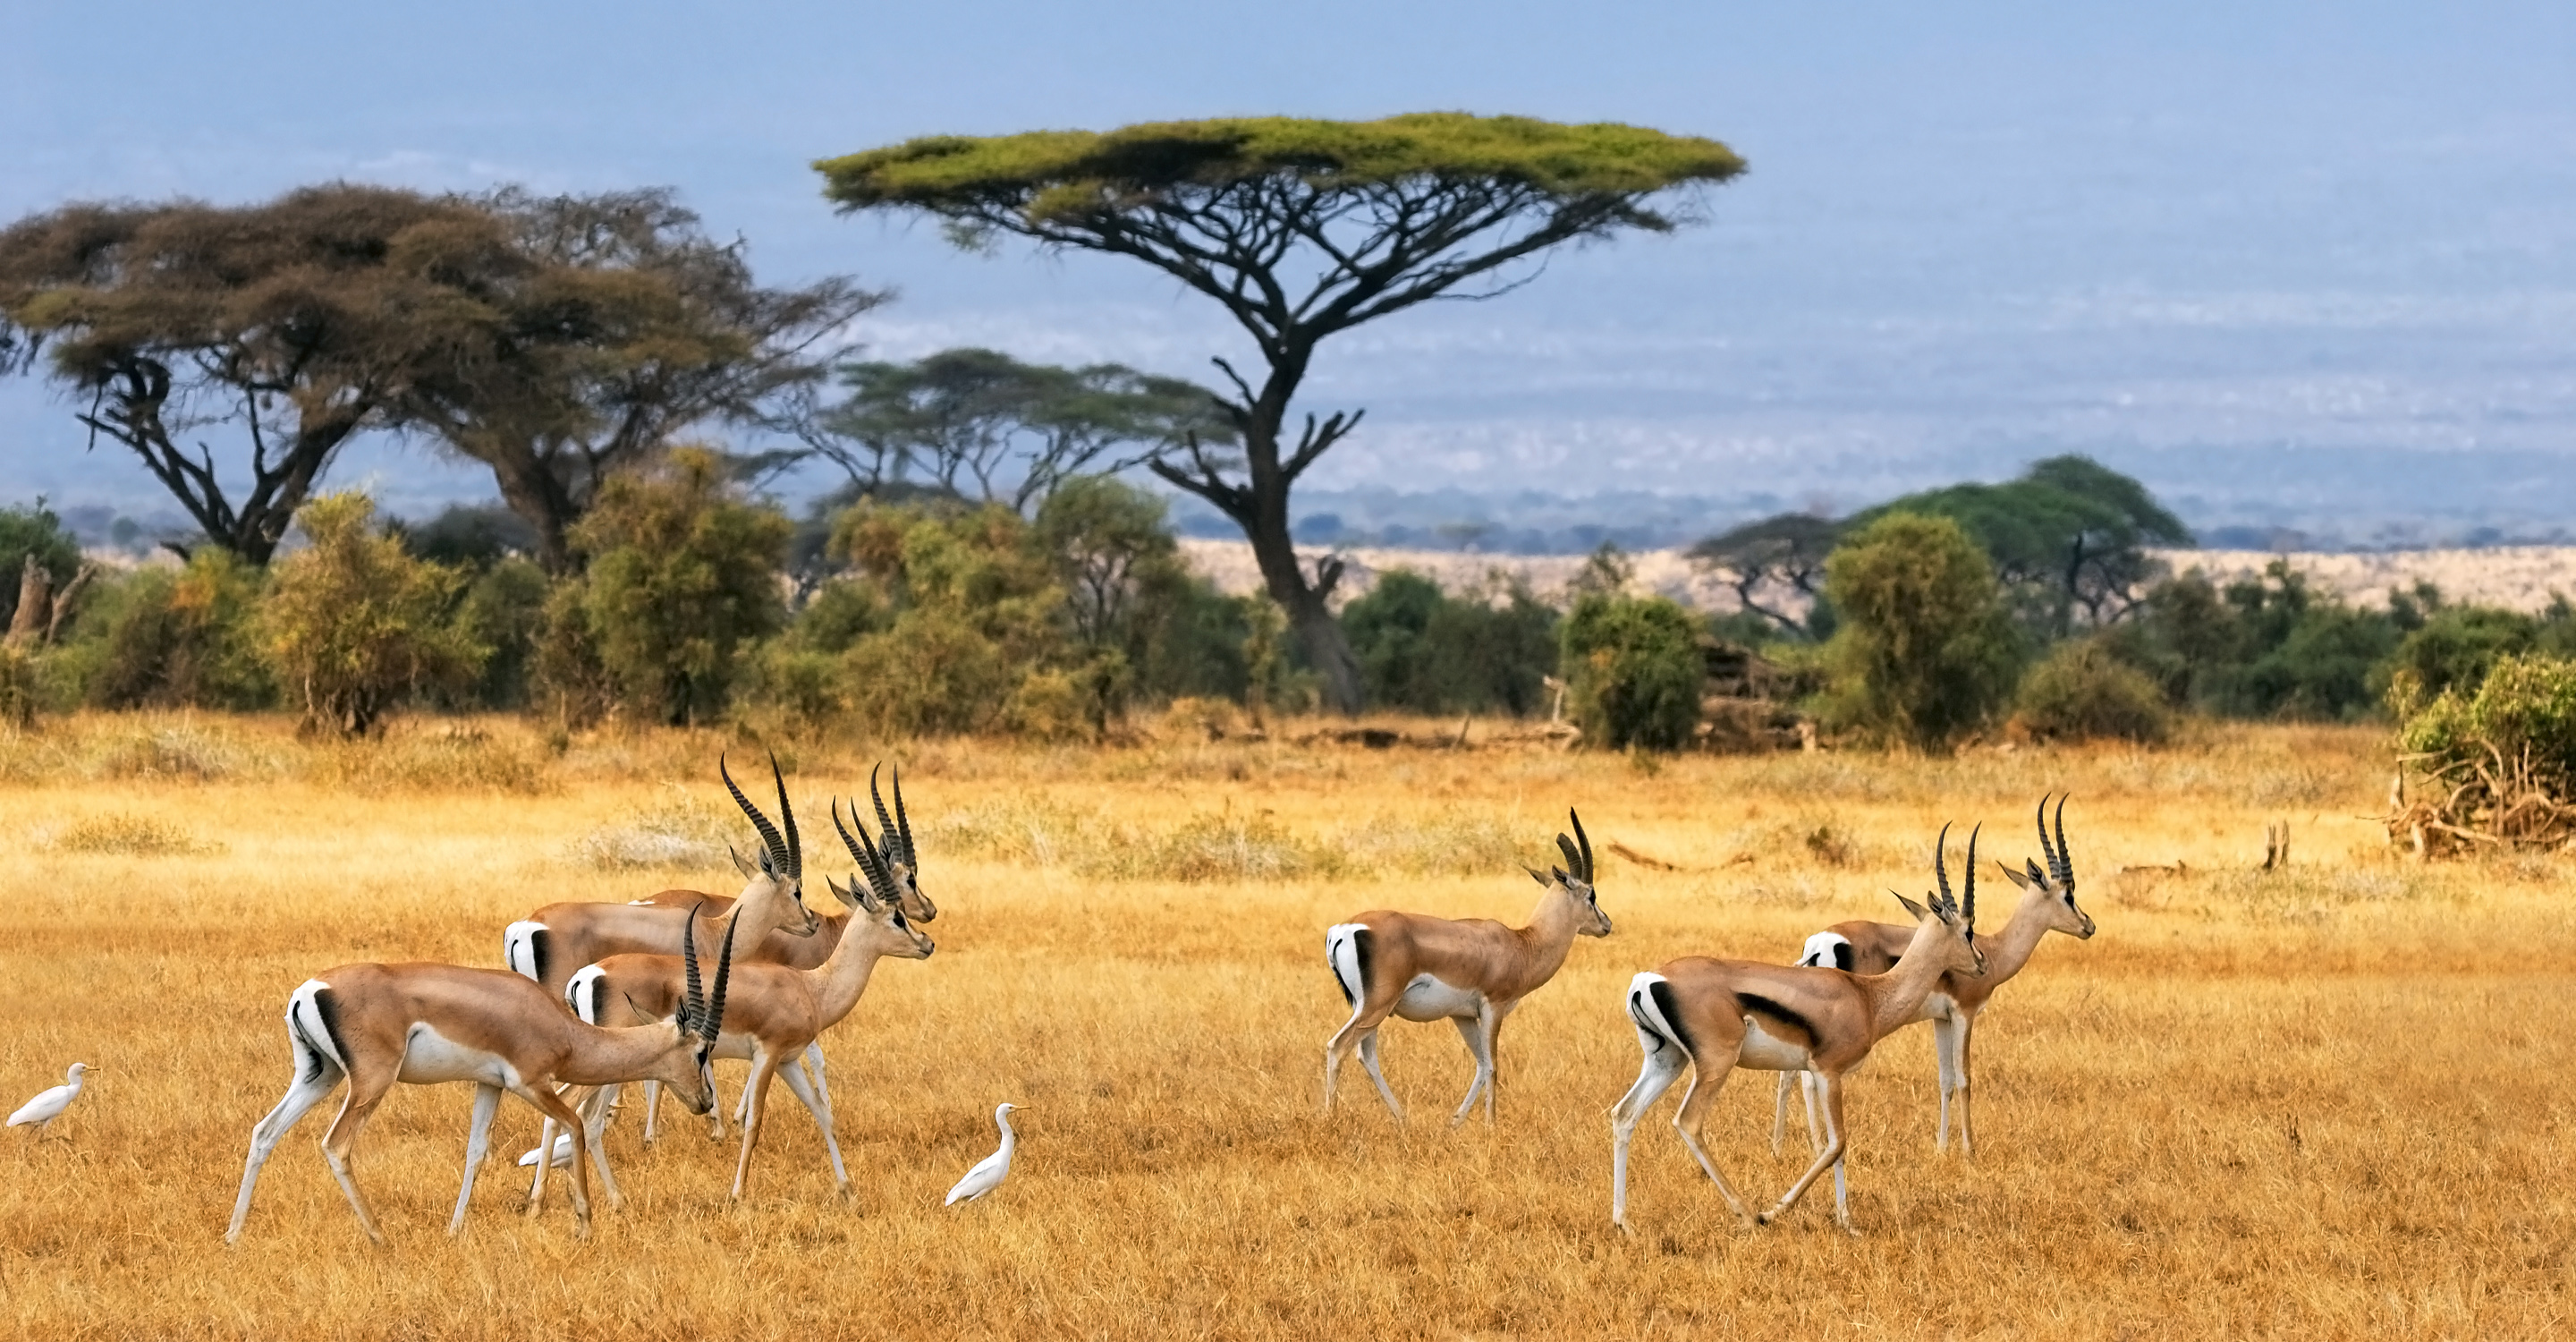 African landscape with gazelles, Kenya